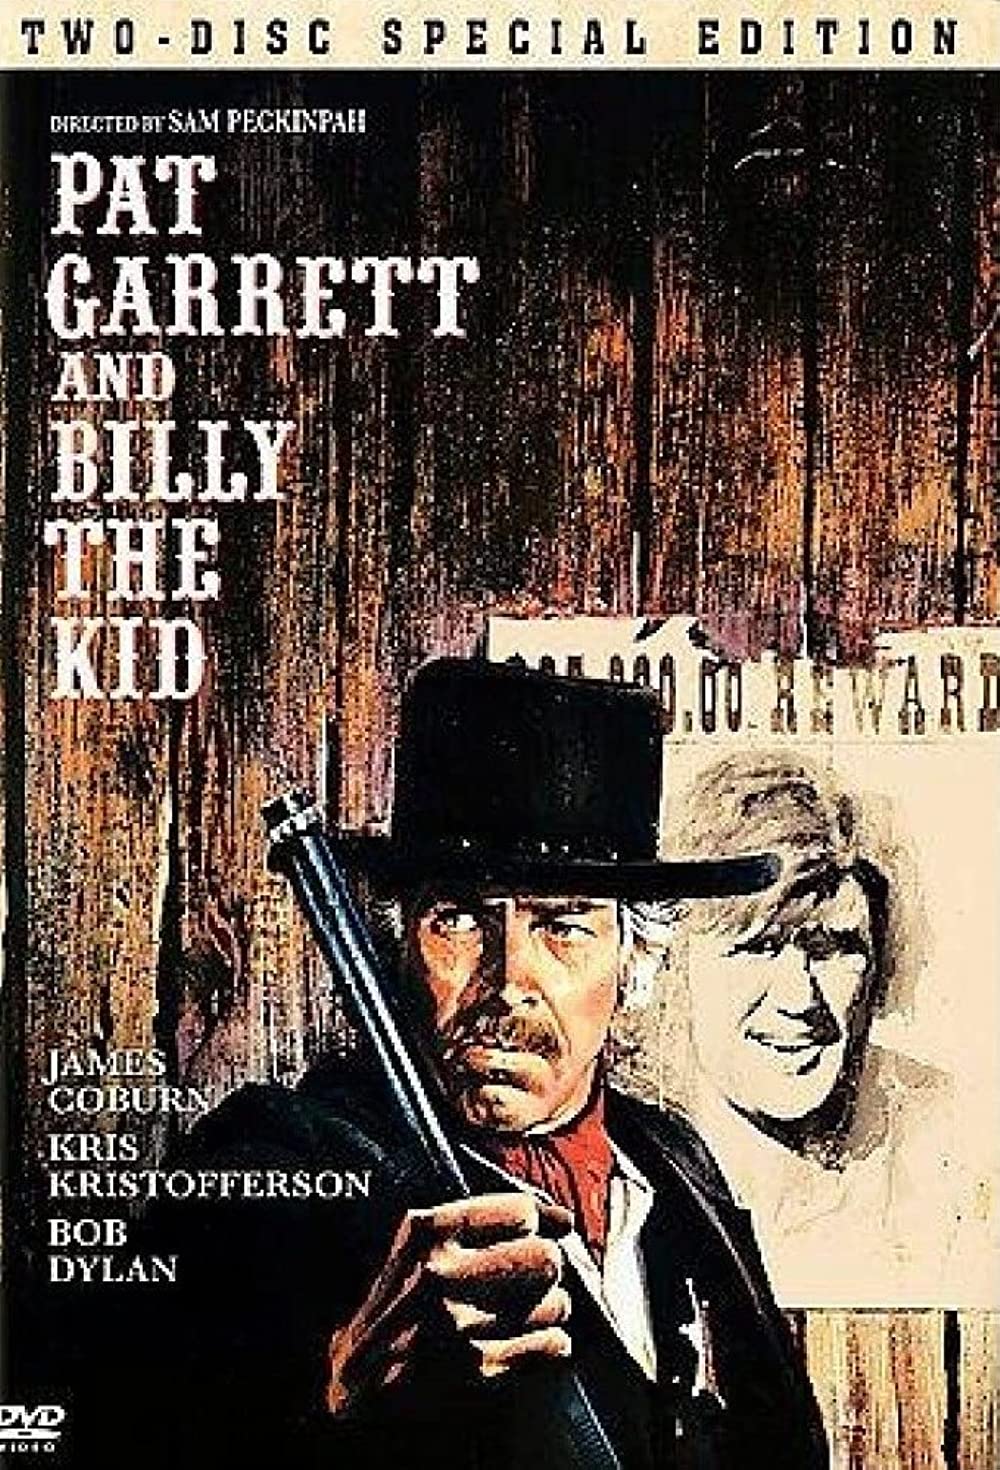 Filmbeschreibung zu Pat Garret jagt Billy the Kid (OV)